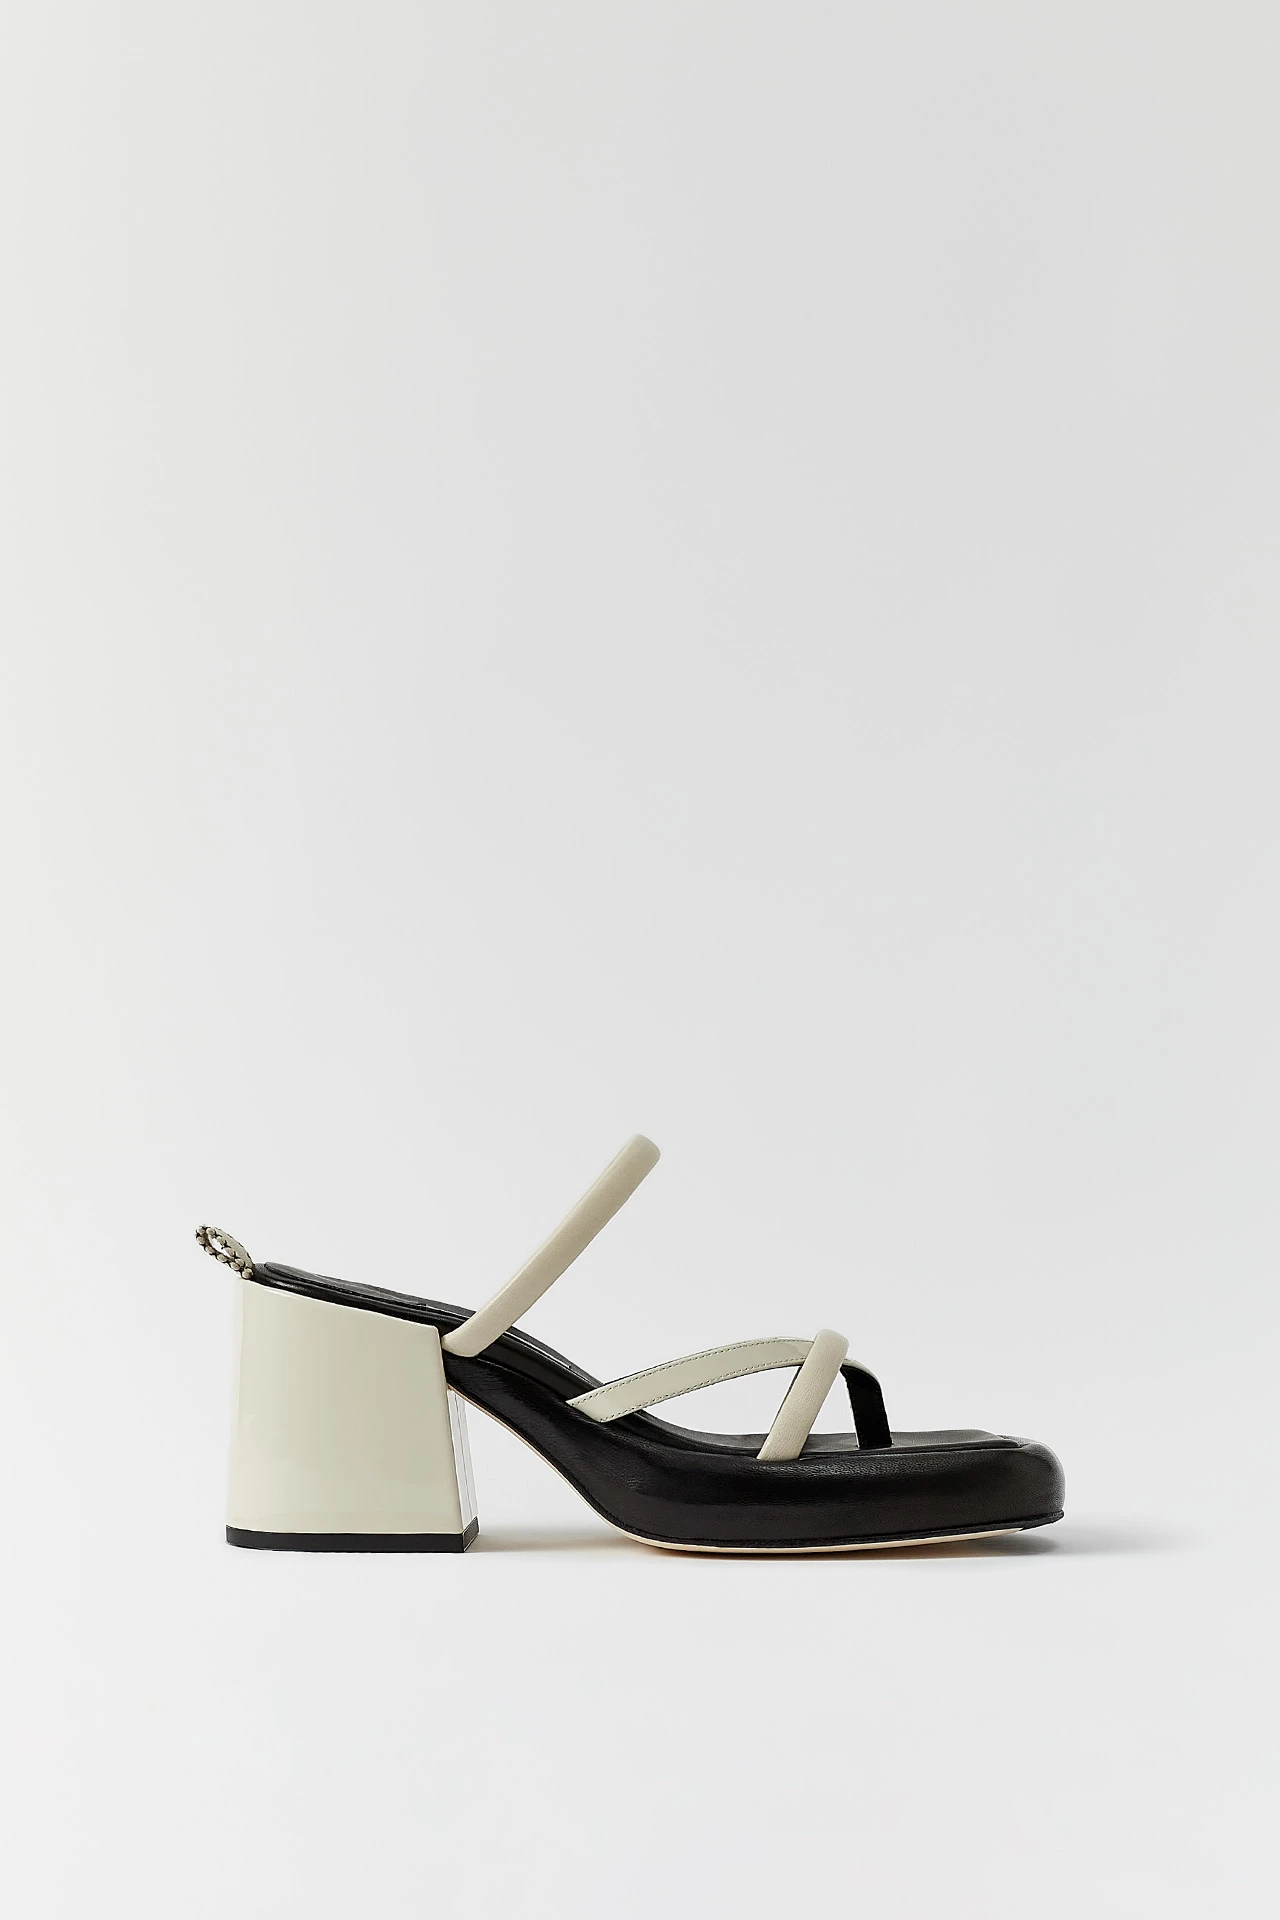 Miista-delfine-white-sandals-01